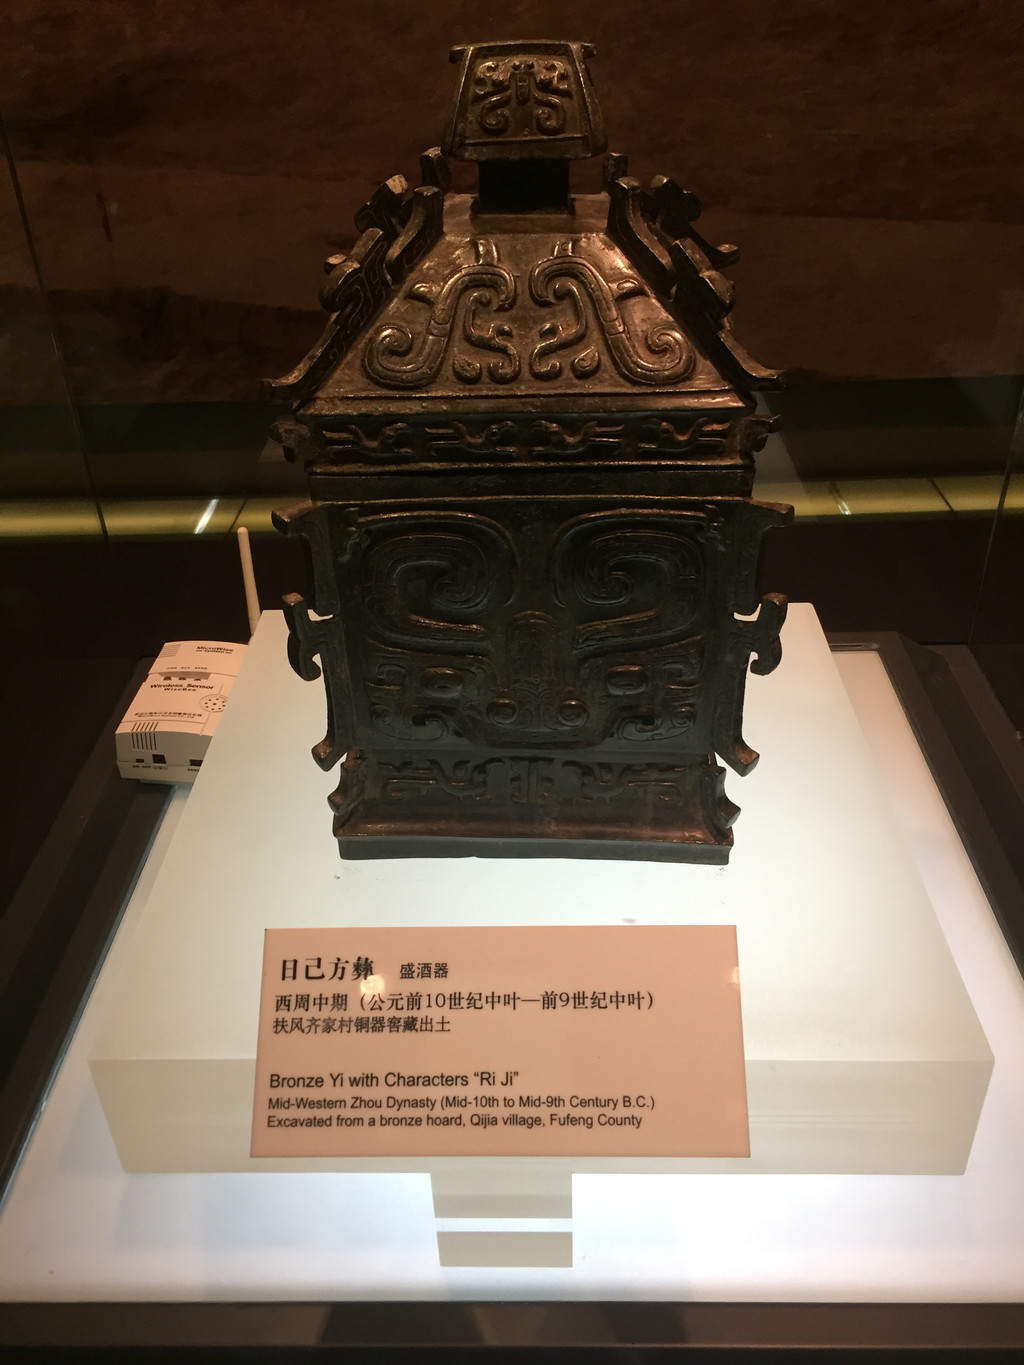 是中国第二大博物馆,个人认为来到西安这样的古都,了解西安的文物历史